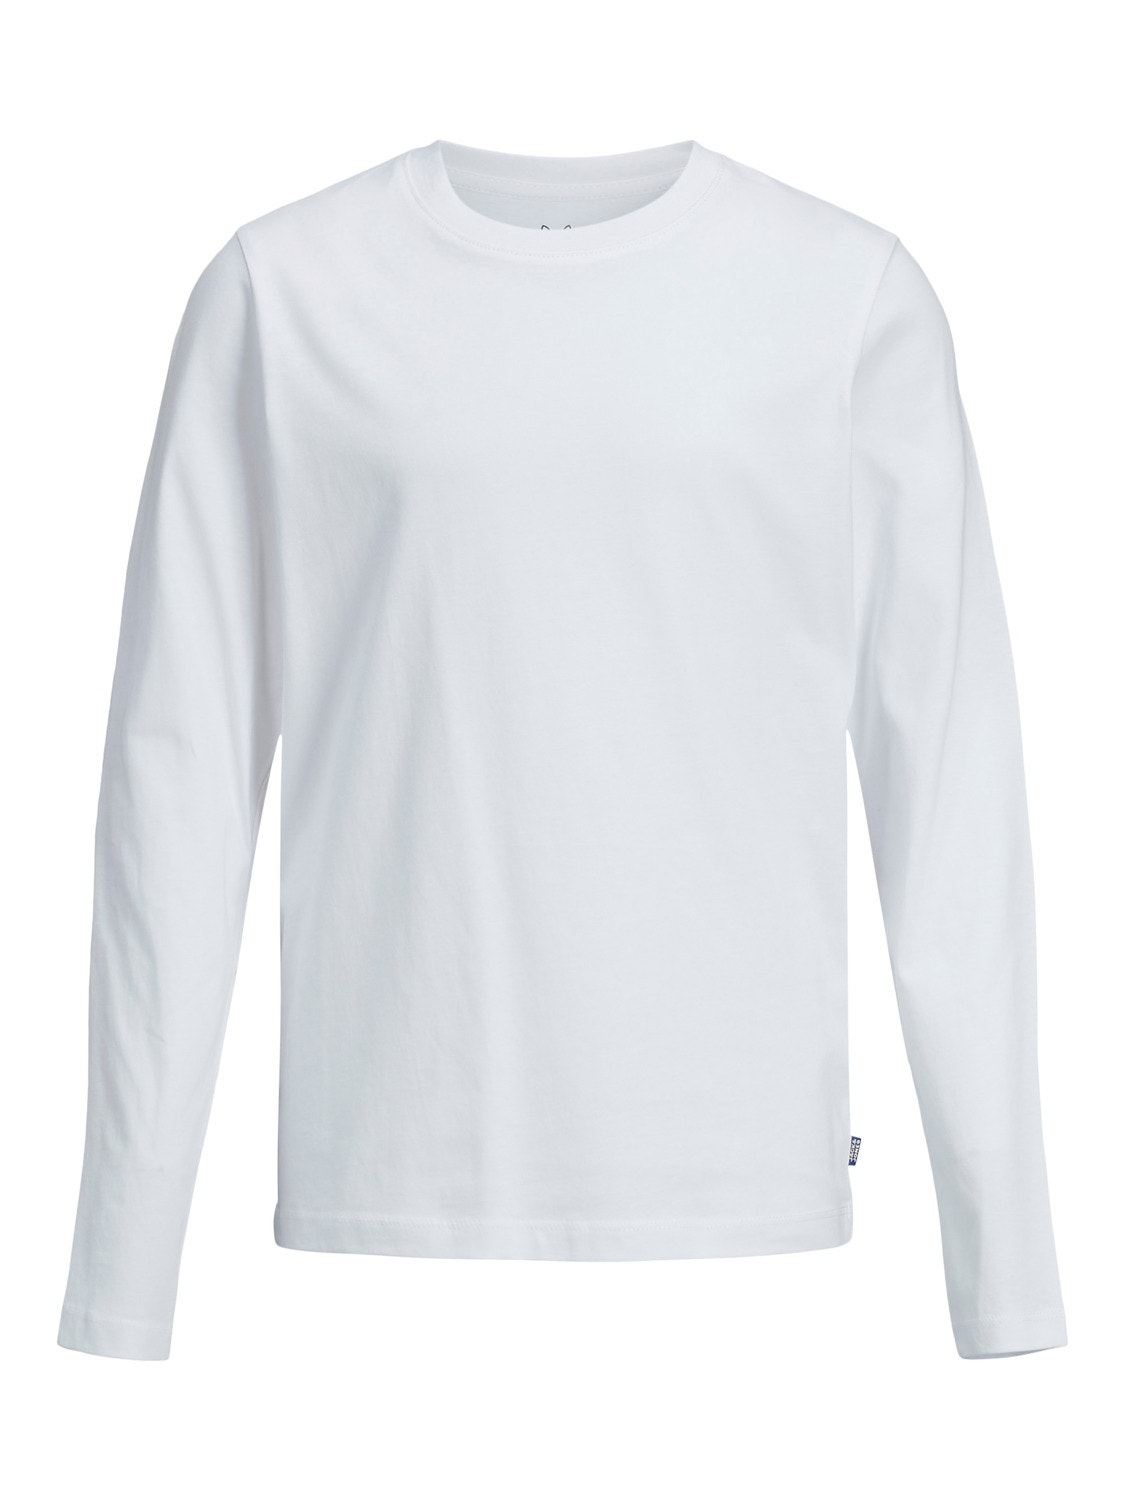 Jack & Jones Einfarbig T-shirt Für jungs -White - 12197050